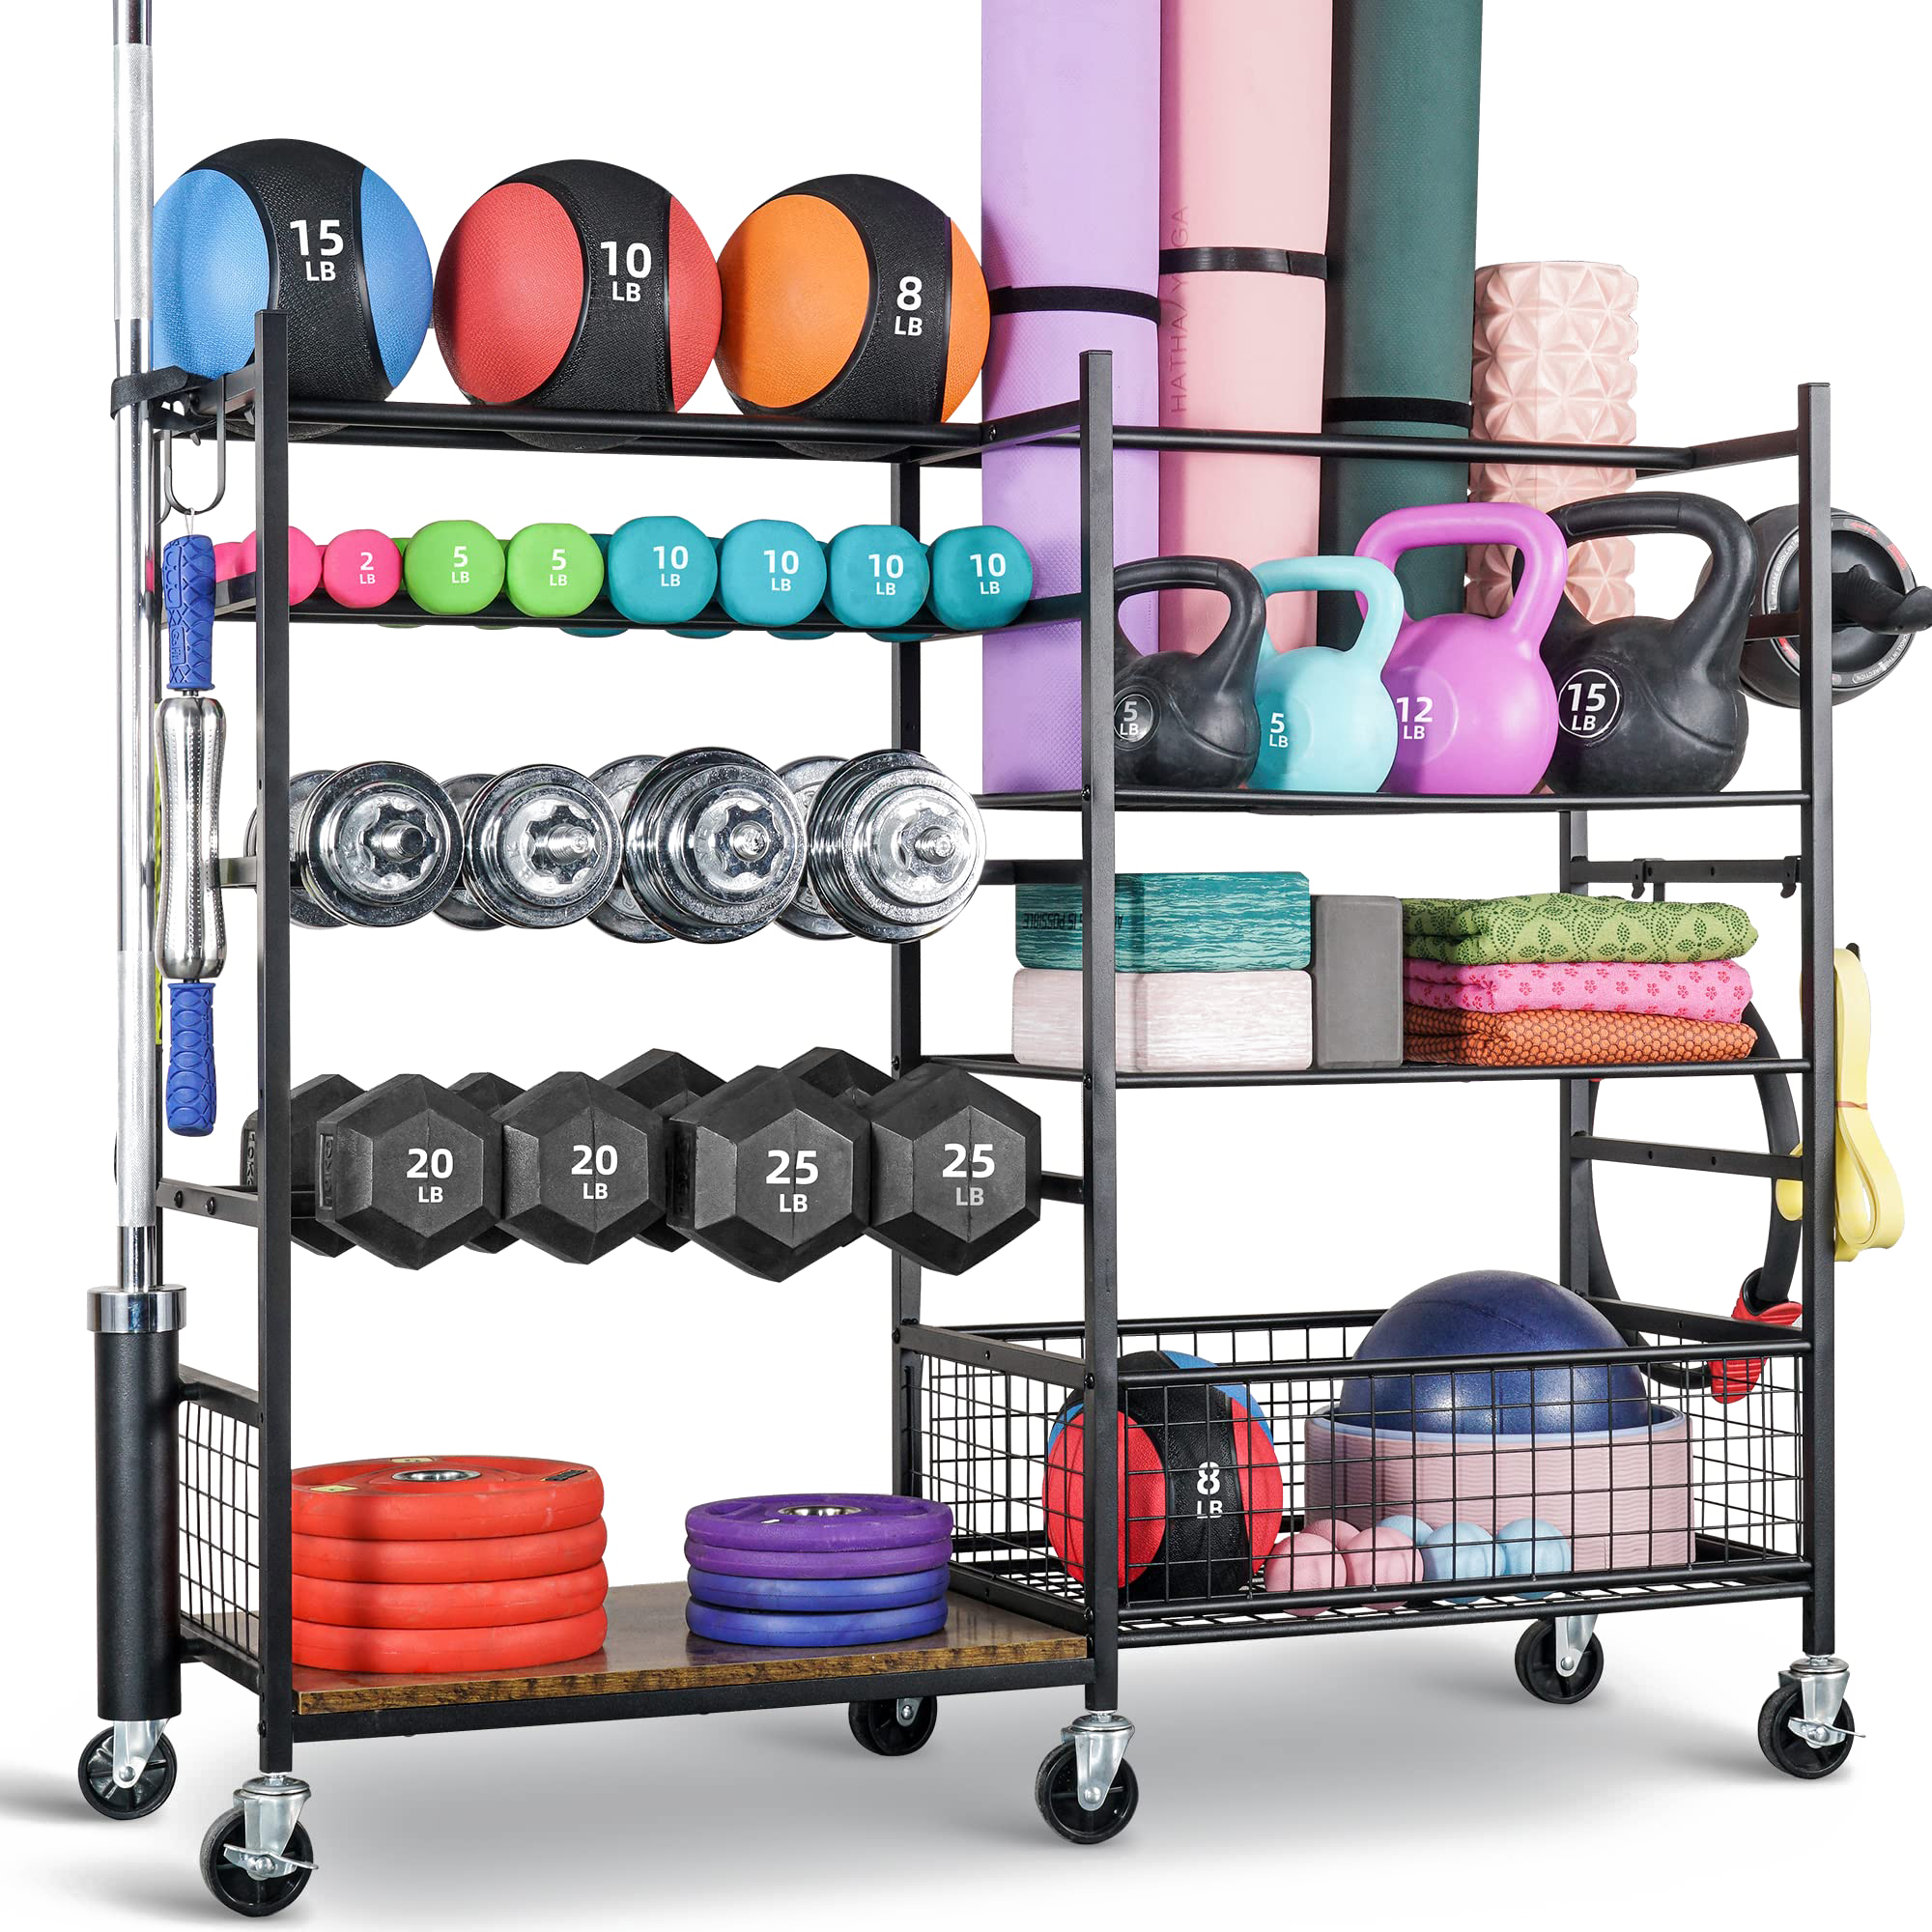 Mythinglogic Yoga Mat Storage Racks,Home Gym Storage Rack for Dumbbells  Kettlebells Foam Roller, Yoga Strap and Resistance Bands, Workout Equipment